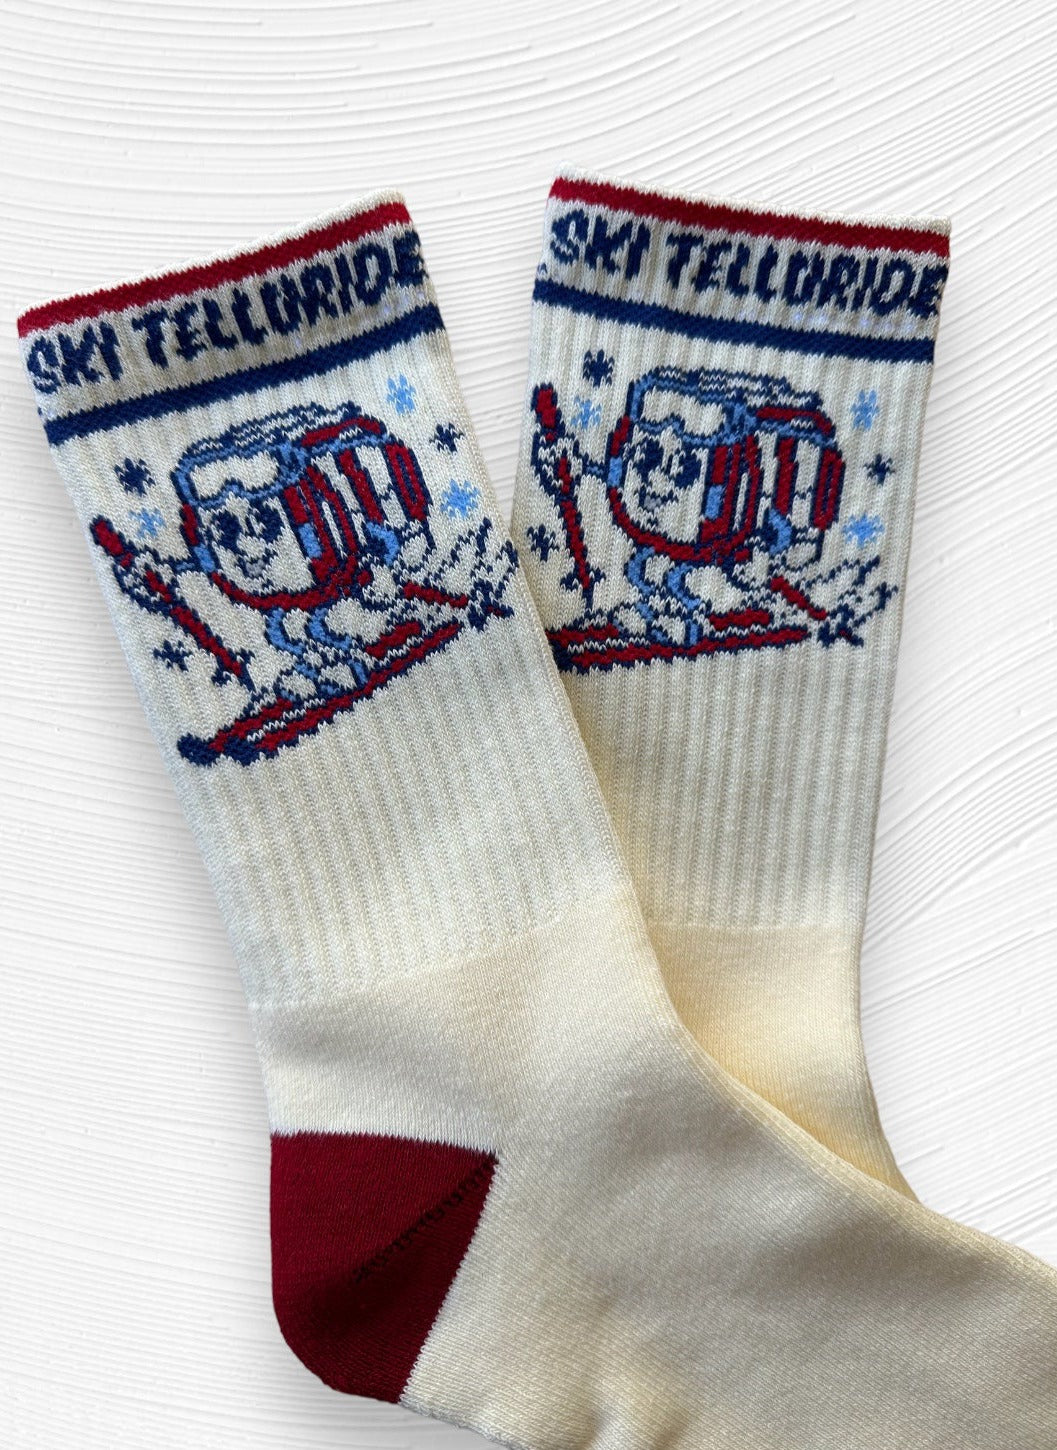 Ski Telluride Apres Socks